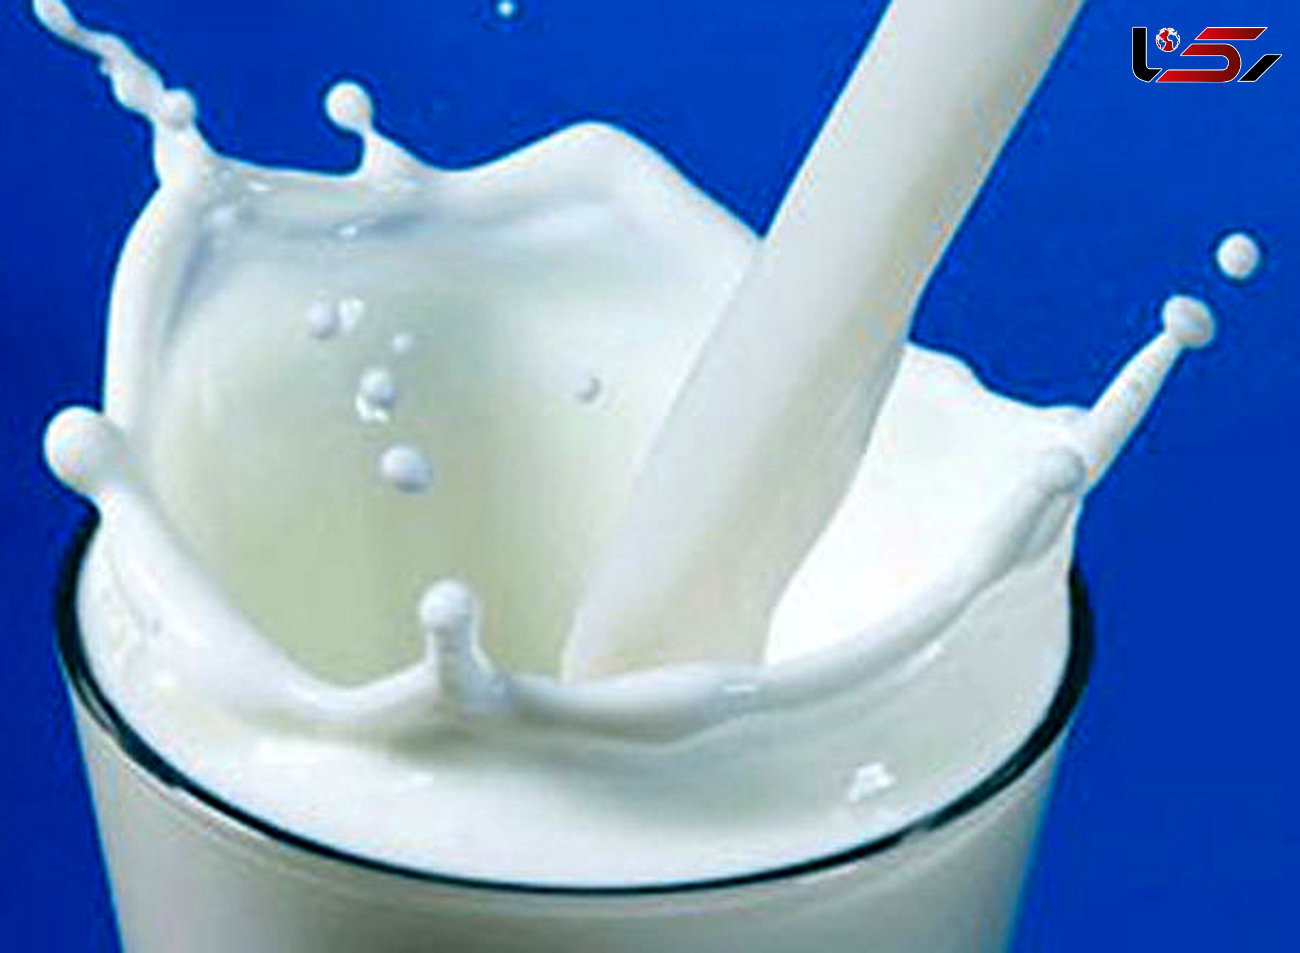 برخی تولید کنندگان قیمت شیرخام را افزایش دادند